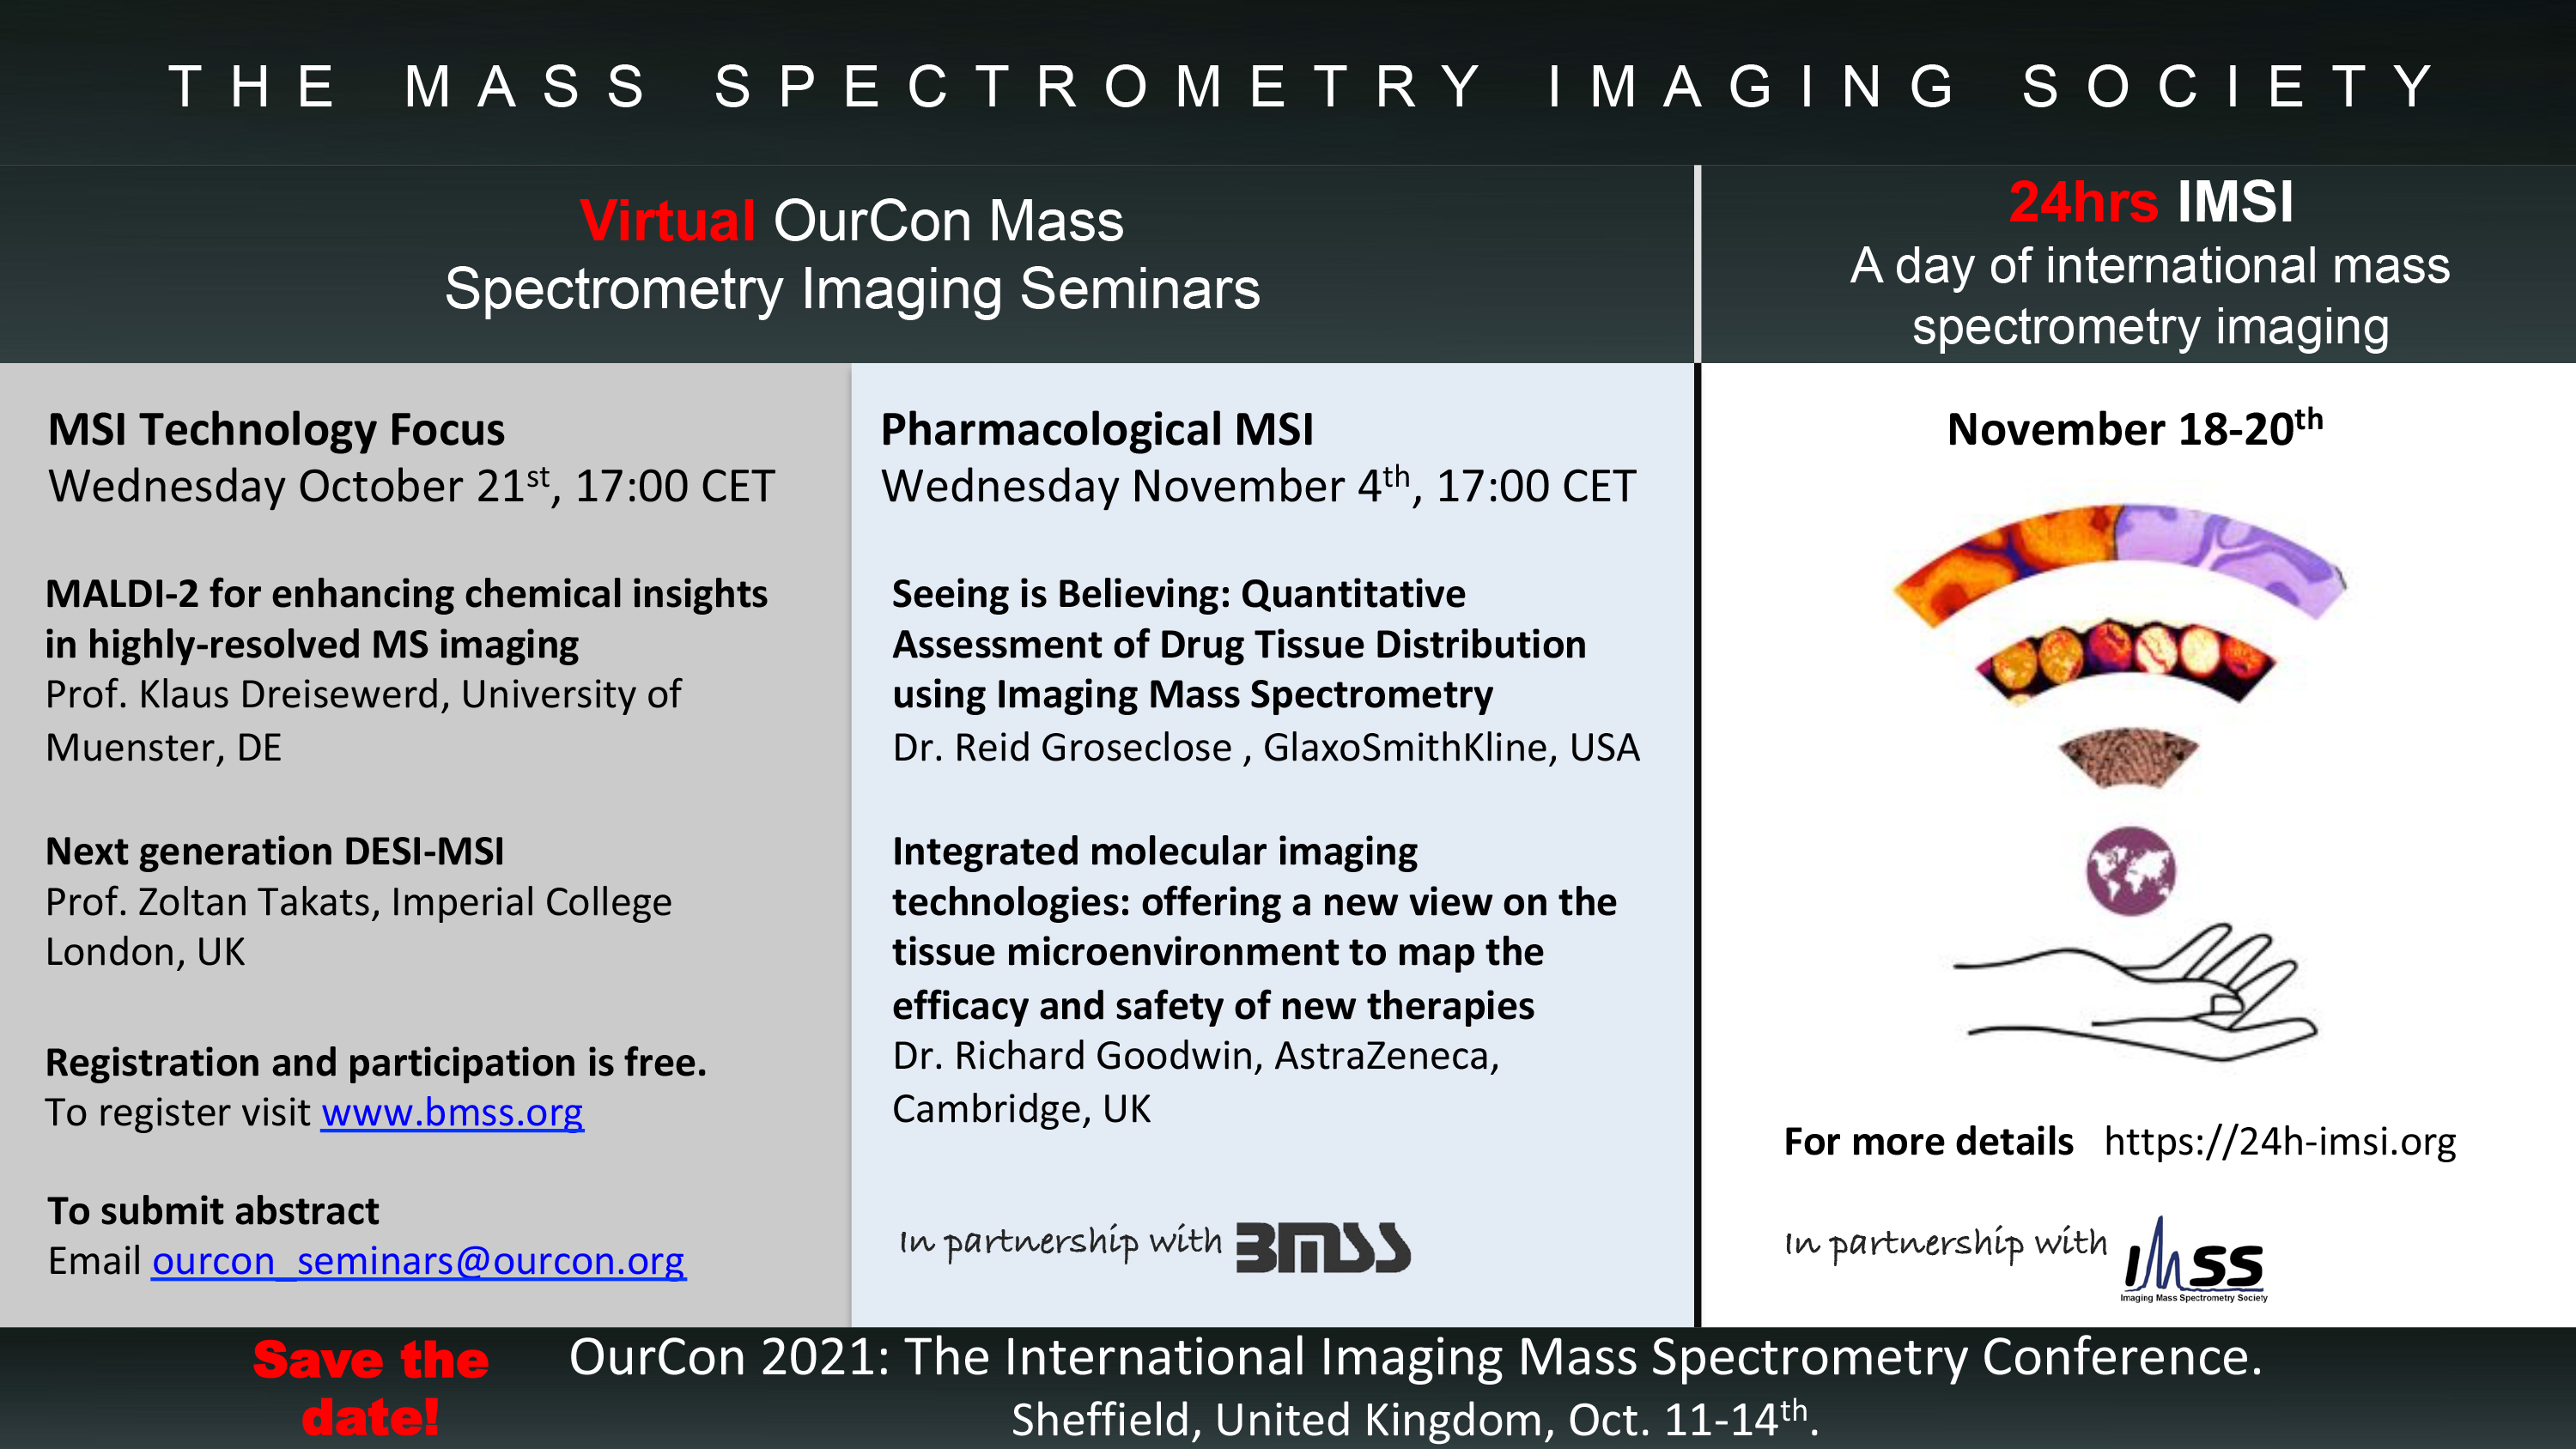 Zaproszenie na seminarium organizowane przez Mass Spectrometry Imaging Society